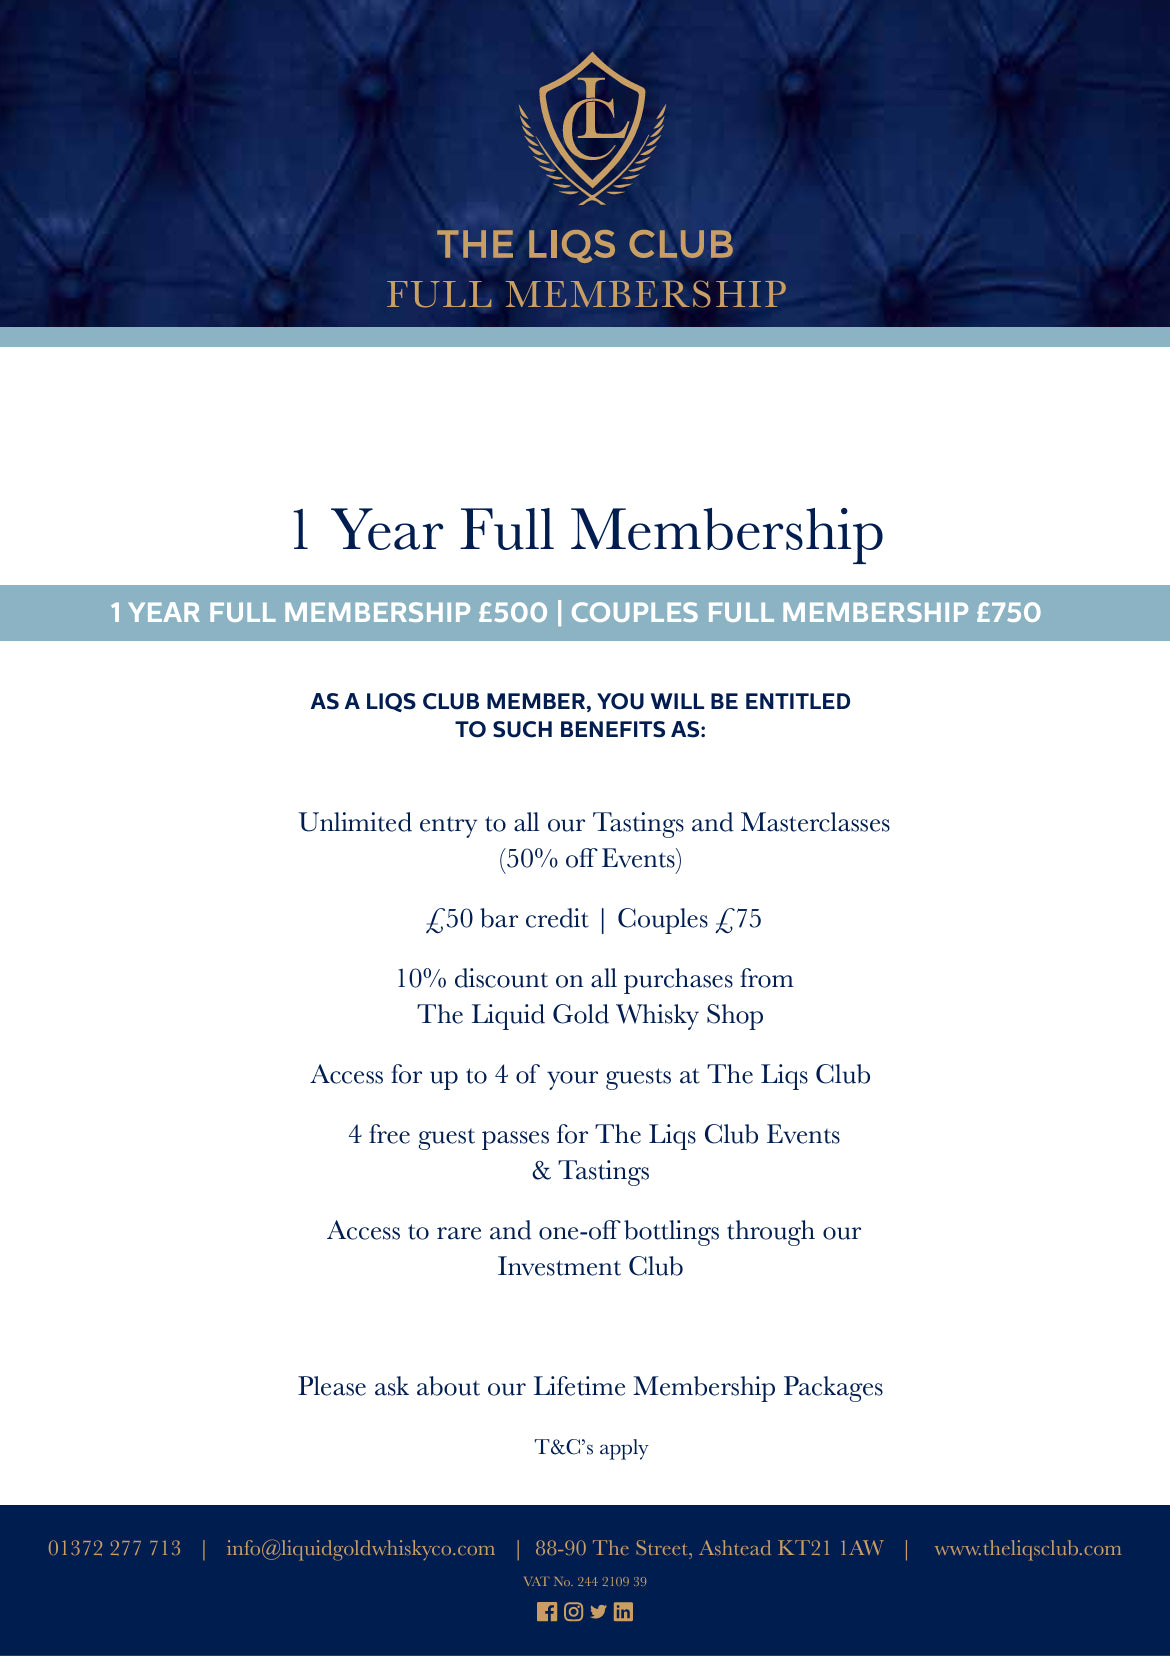 Full Membership - 1 Year